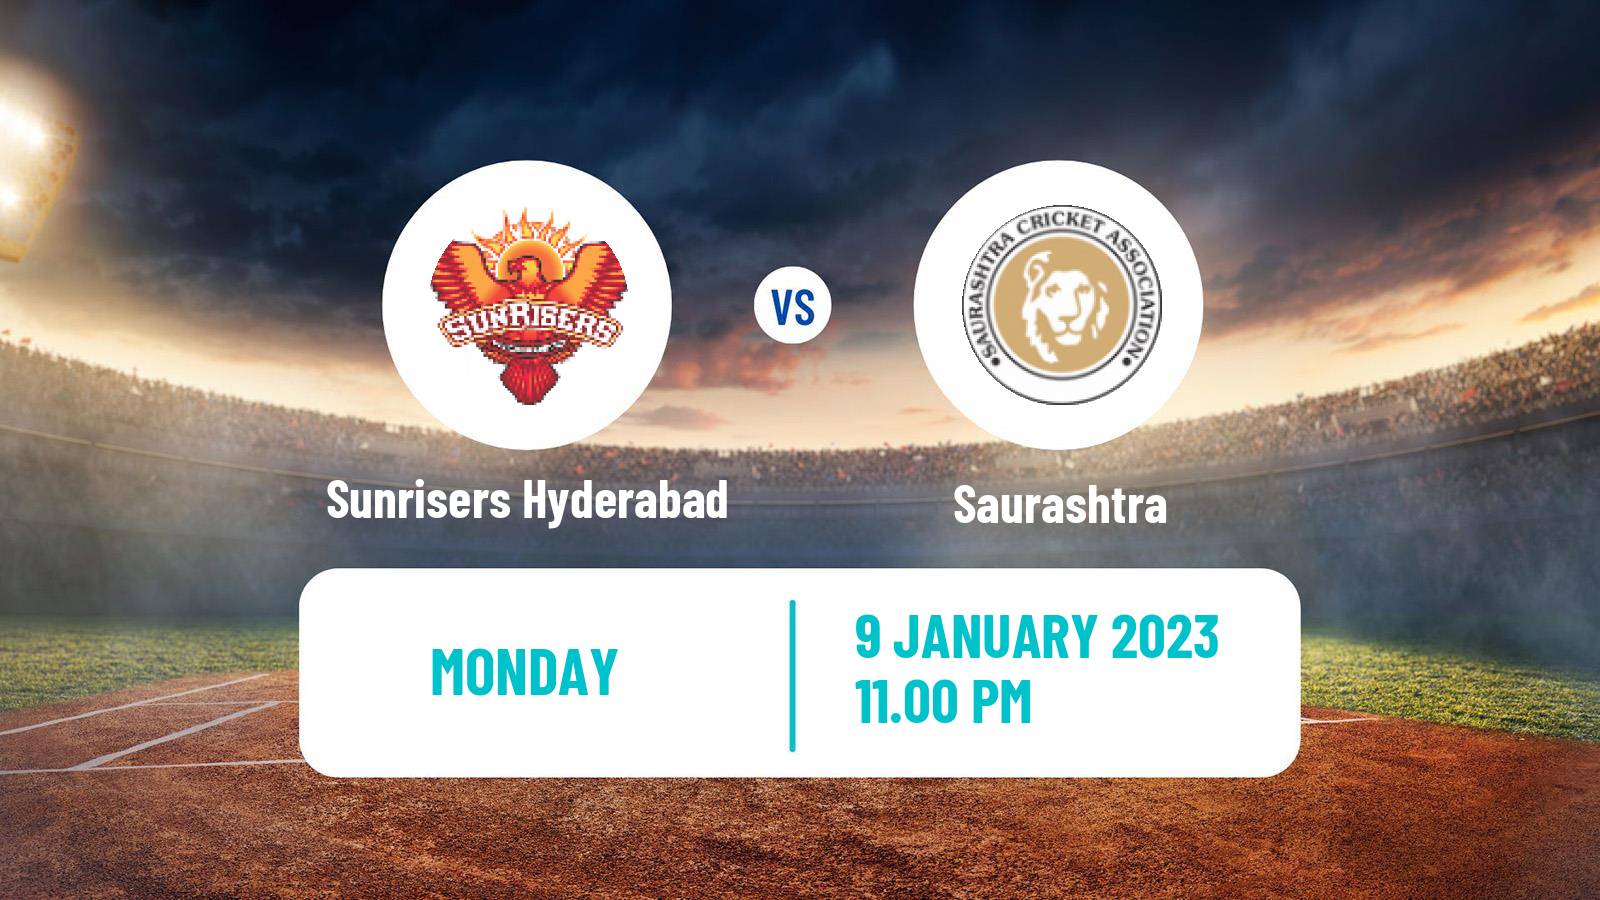 Cricket Ranji Trophy Sunrisers Hyderabad - Saurashtra